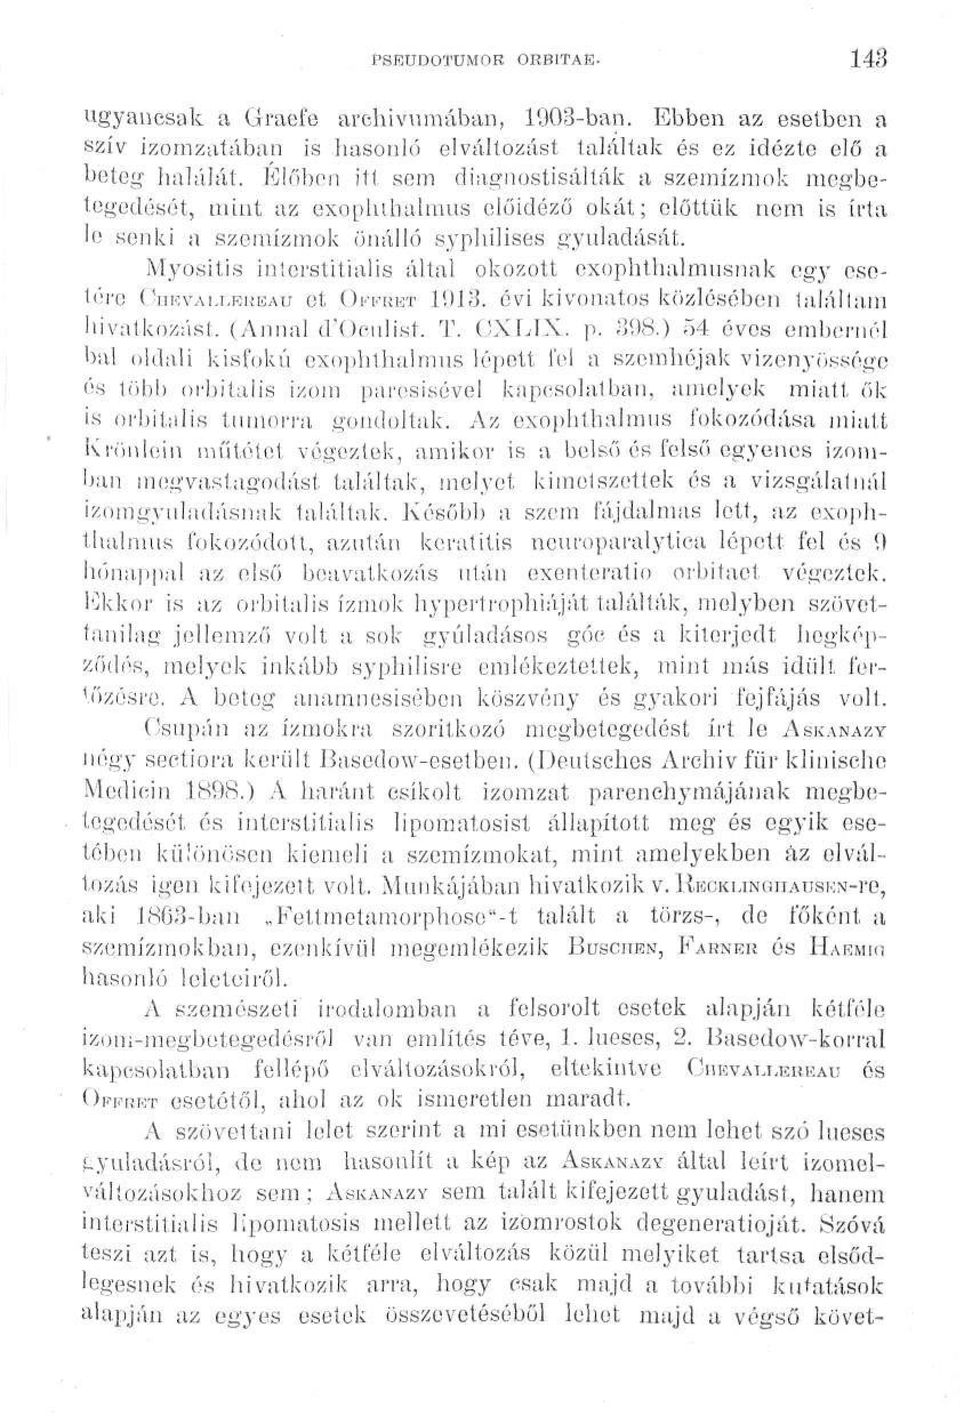 Myositis interstitialis által okozott exophthalmnsnak egy esetére CmcvAi^EREAu et ÍWBET 1913. évi kivonatos közlésében találtam hivatkozást. (Annál d'oculist, T. CXLIX. p. 398.